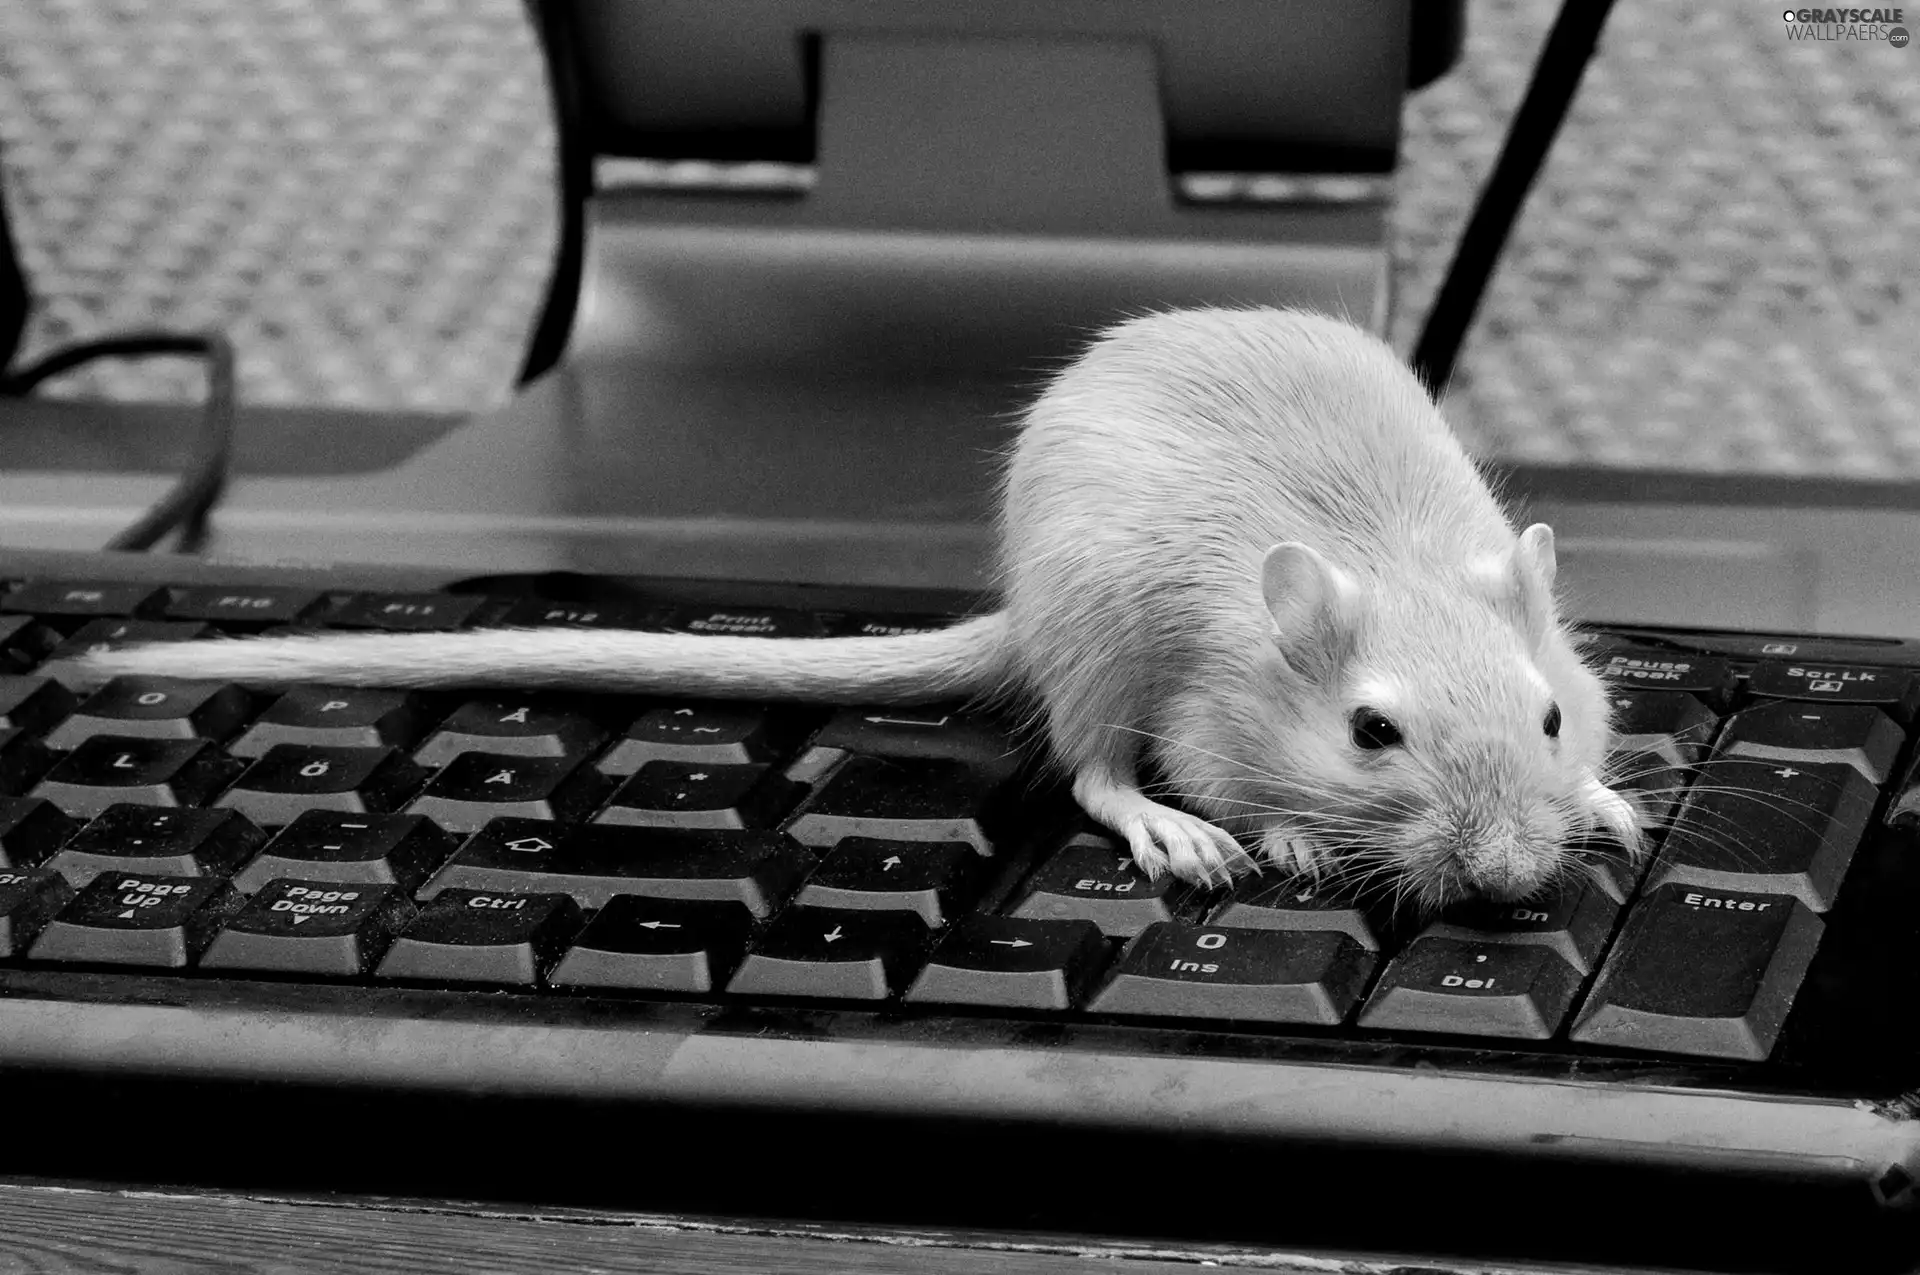 keyboard, rat